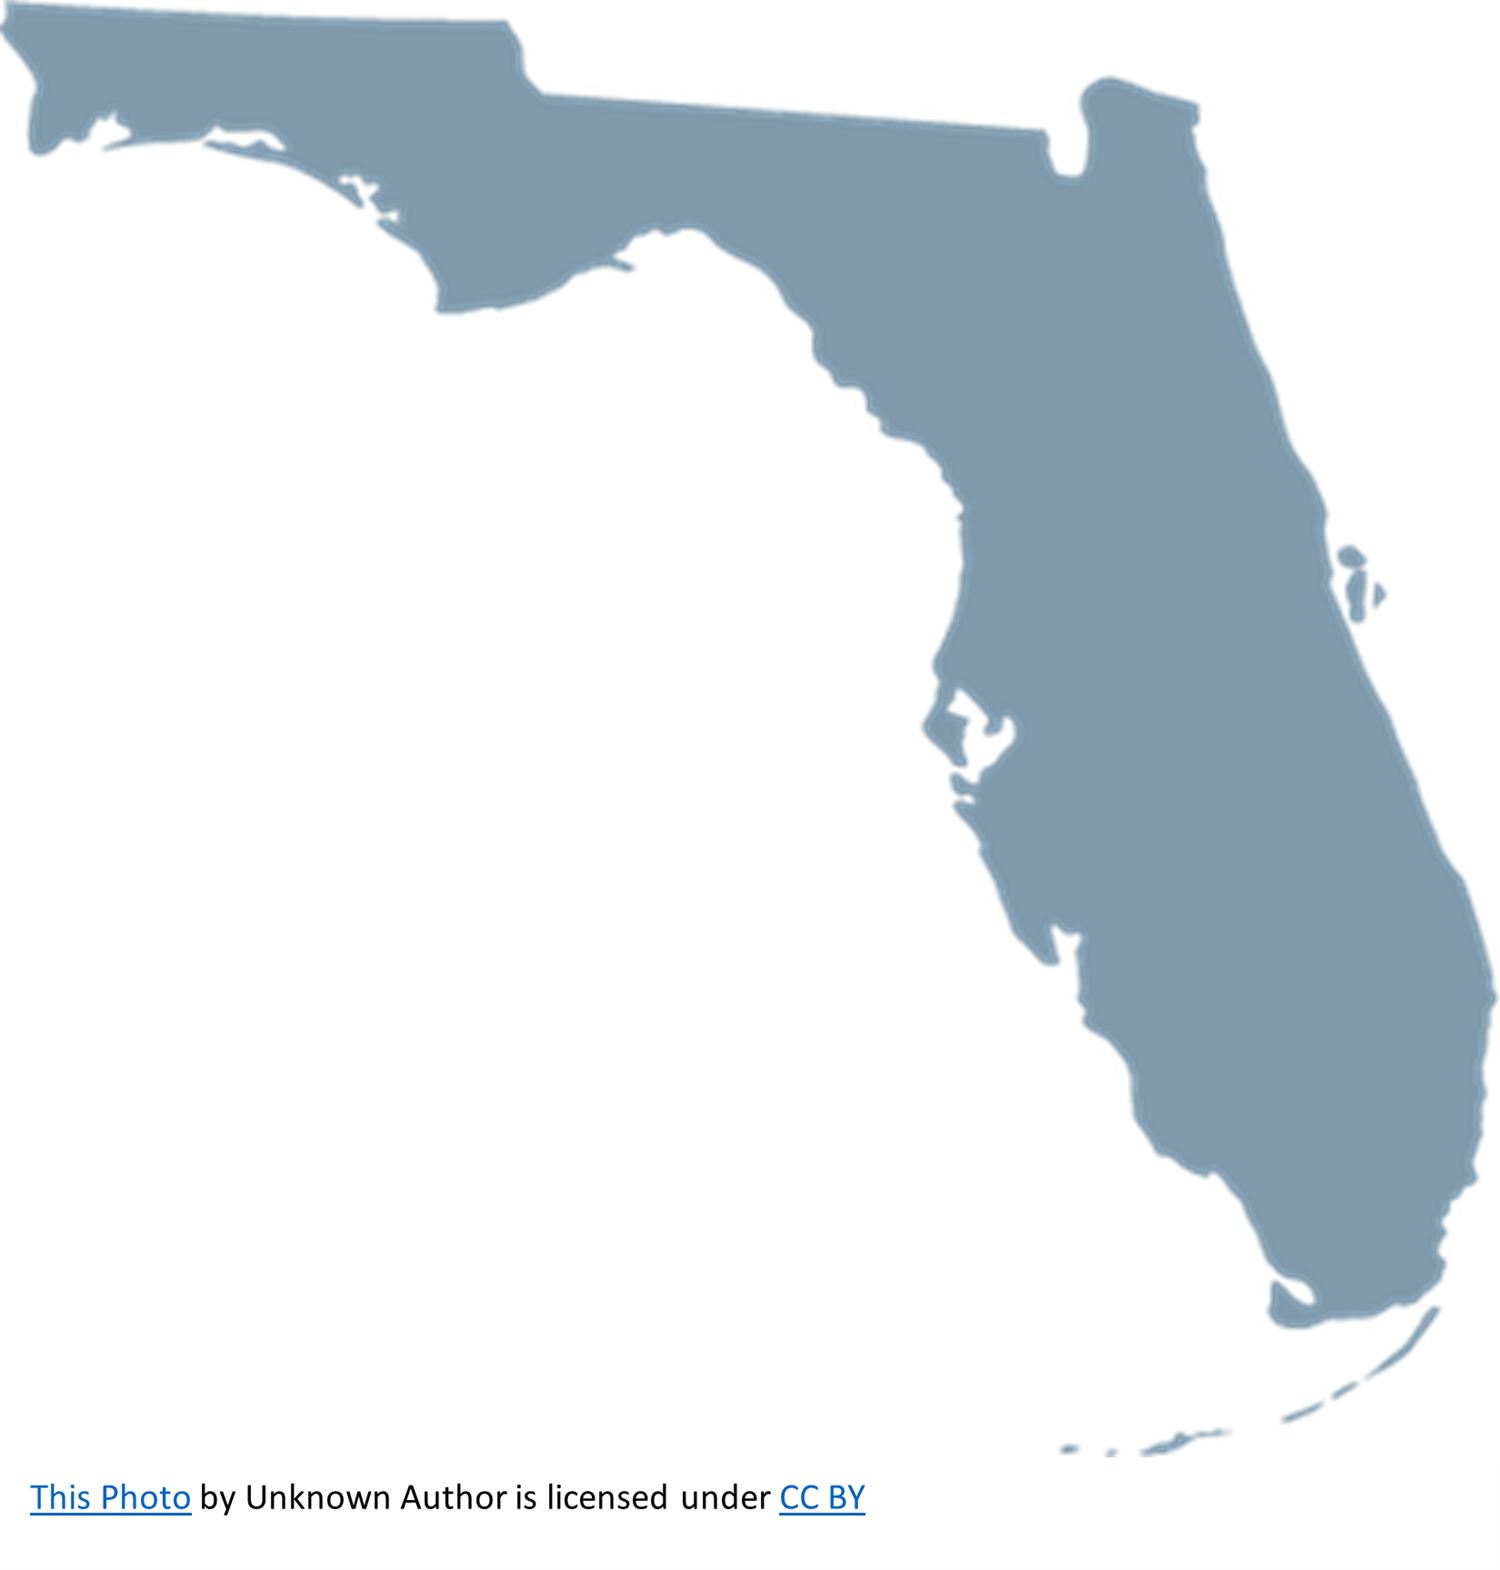 Florida South Bound 2023-2024 on jun. 28, 10:00@Florida - Elegir asientoCompra entradas y obtén información enCrossroad Tours Inc. crossroadtours